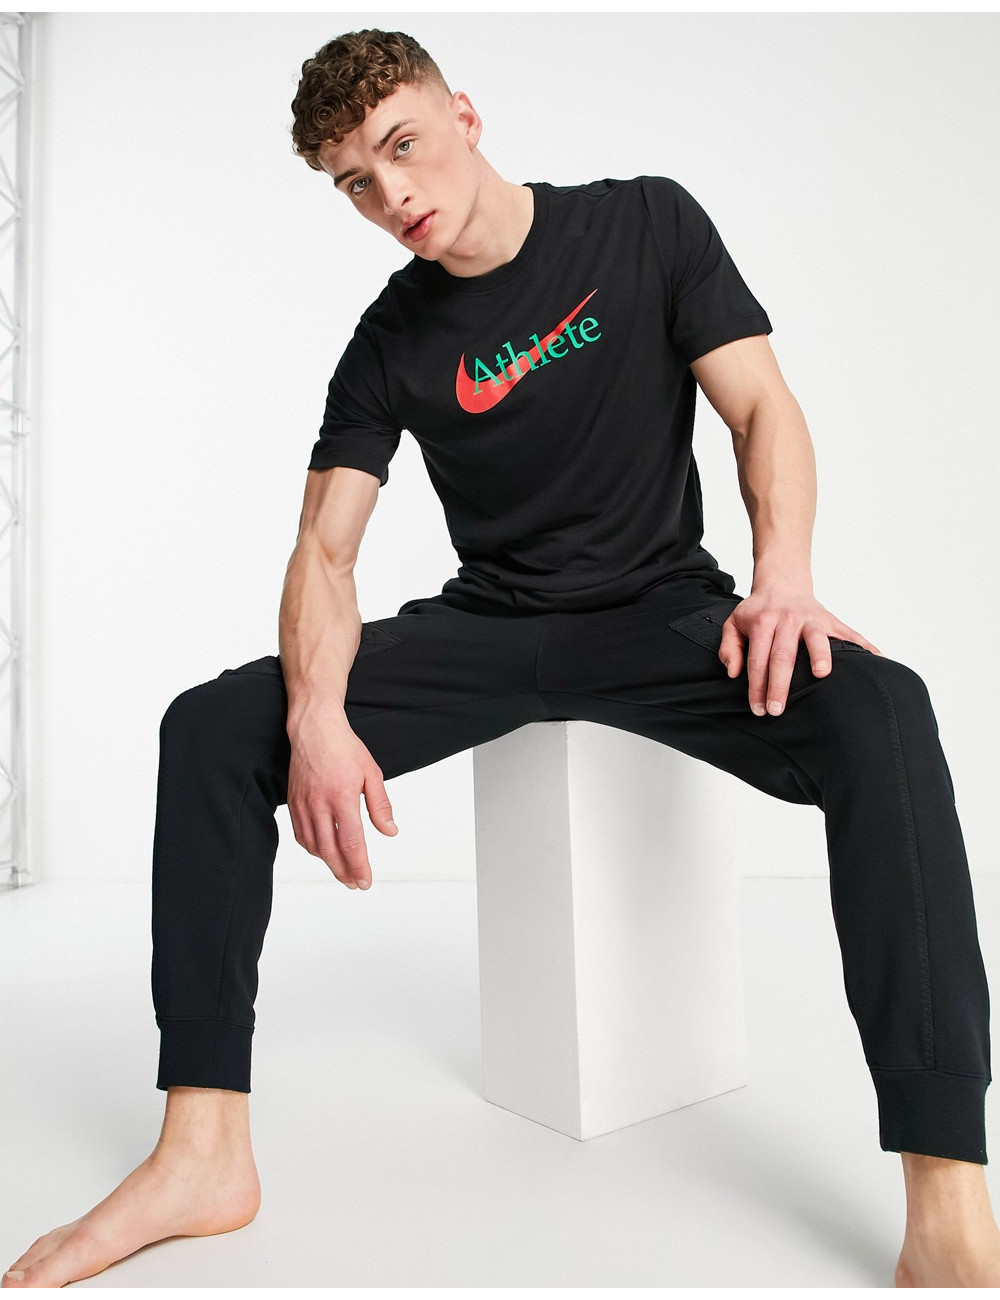 Nike Dri-FIT t-shirt in black